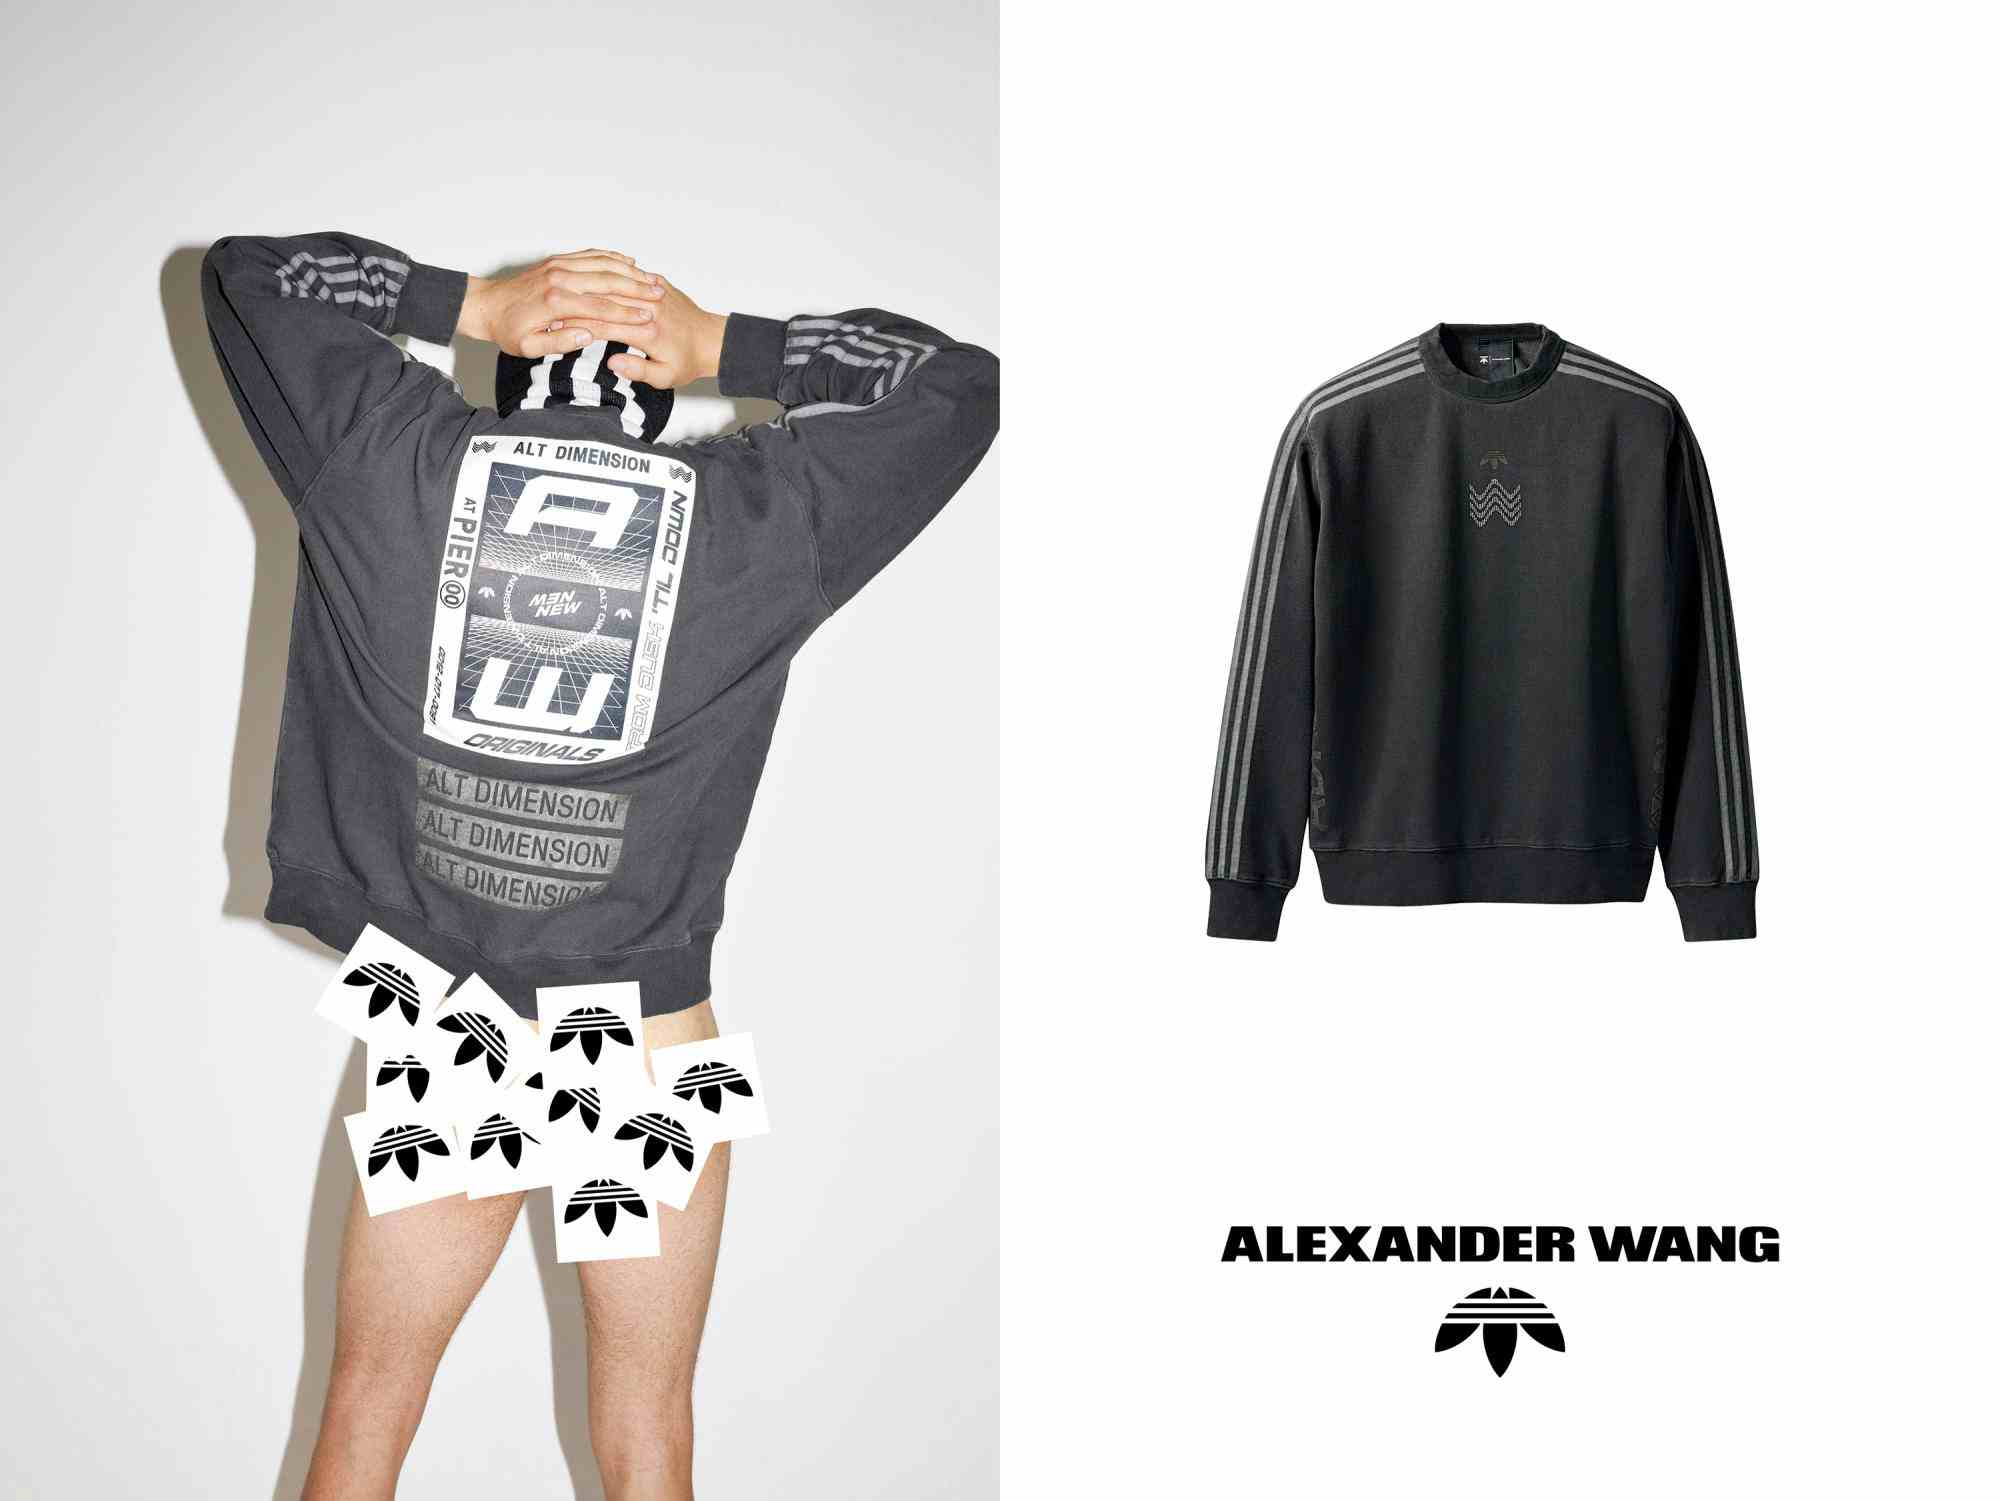 ADIDAS x ALEXANDER WANG - Adidas Originals 
Photographer: Juergen Teller
Stylist: Elin Svahn
